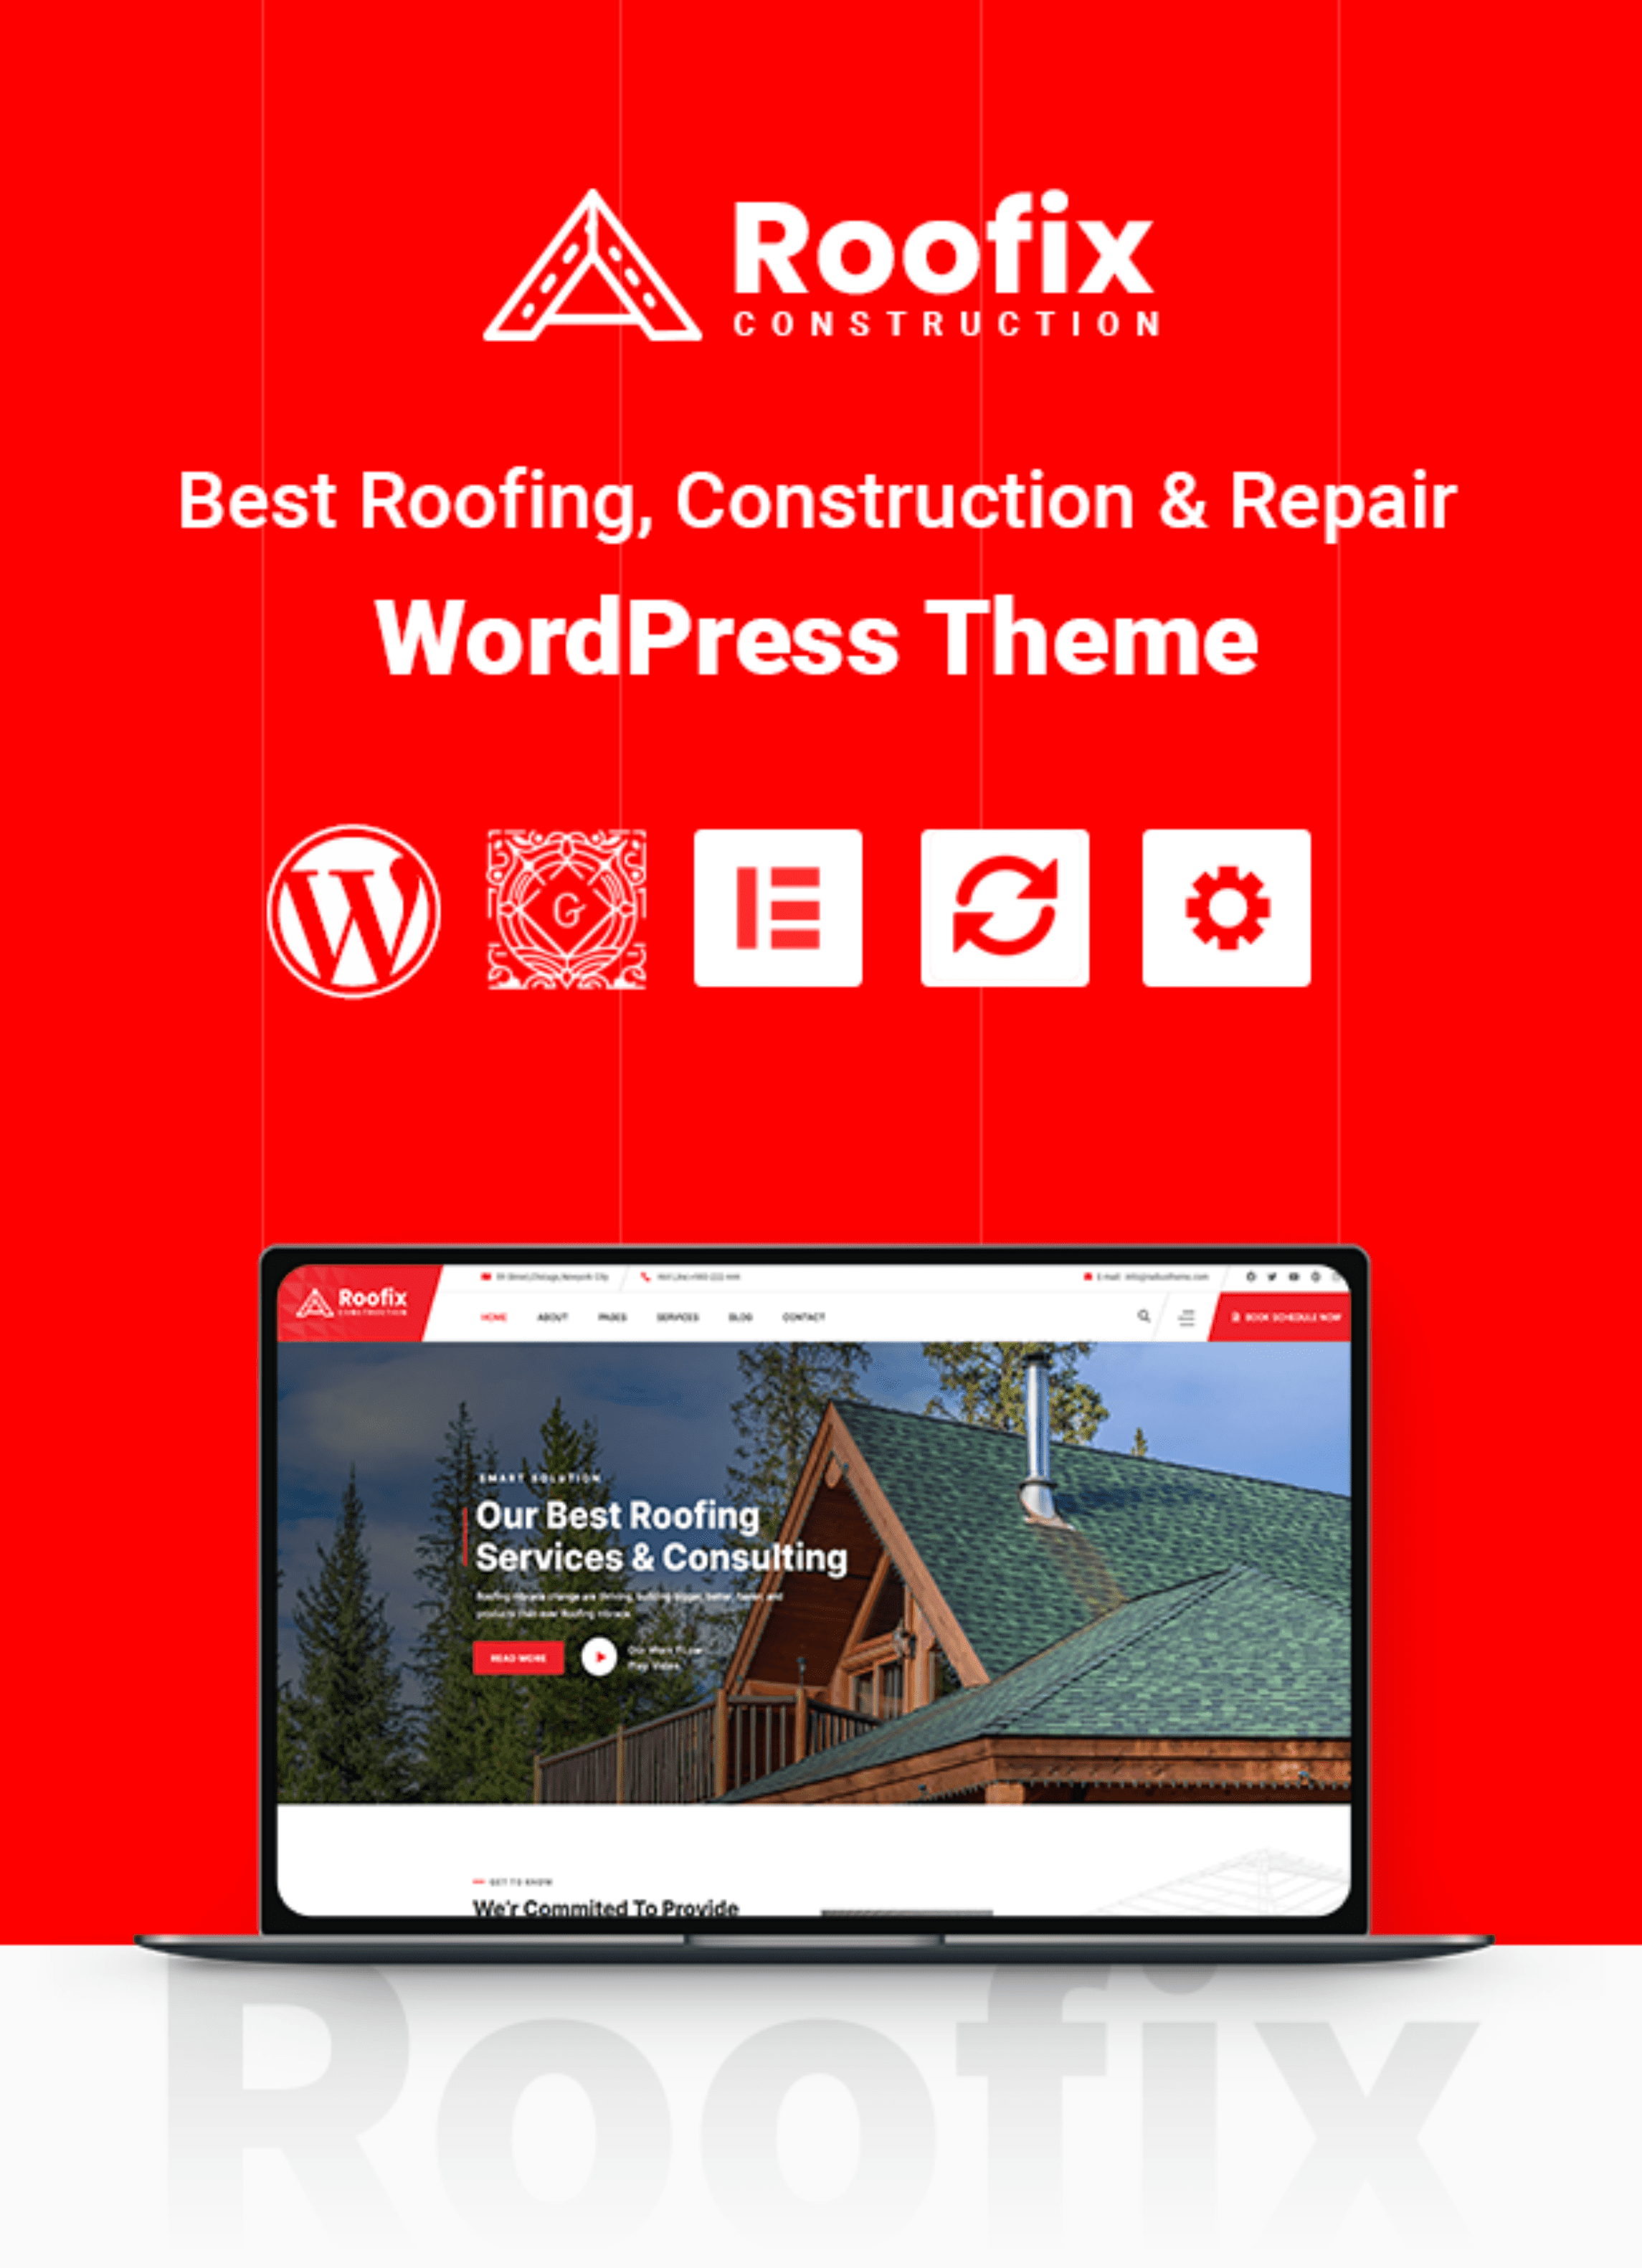 Roofix WordPress Theme